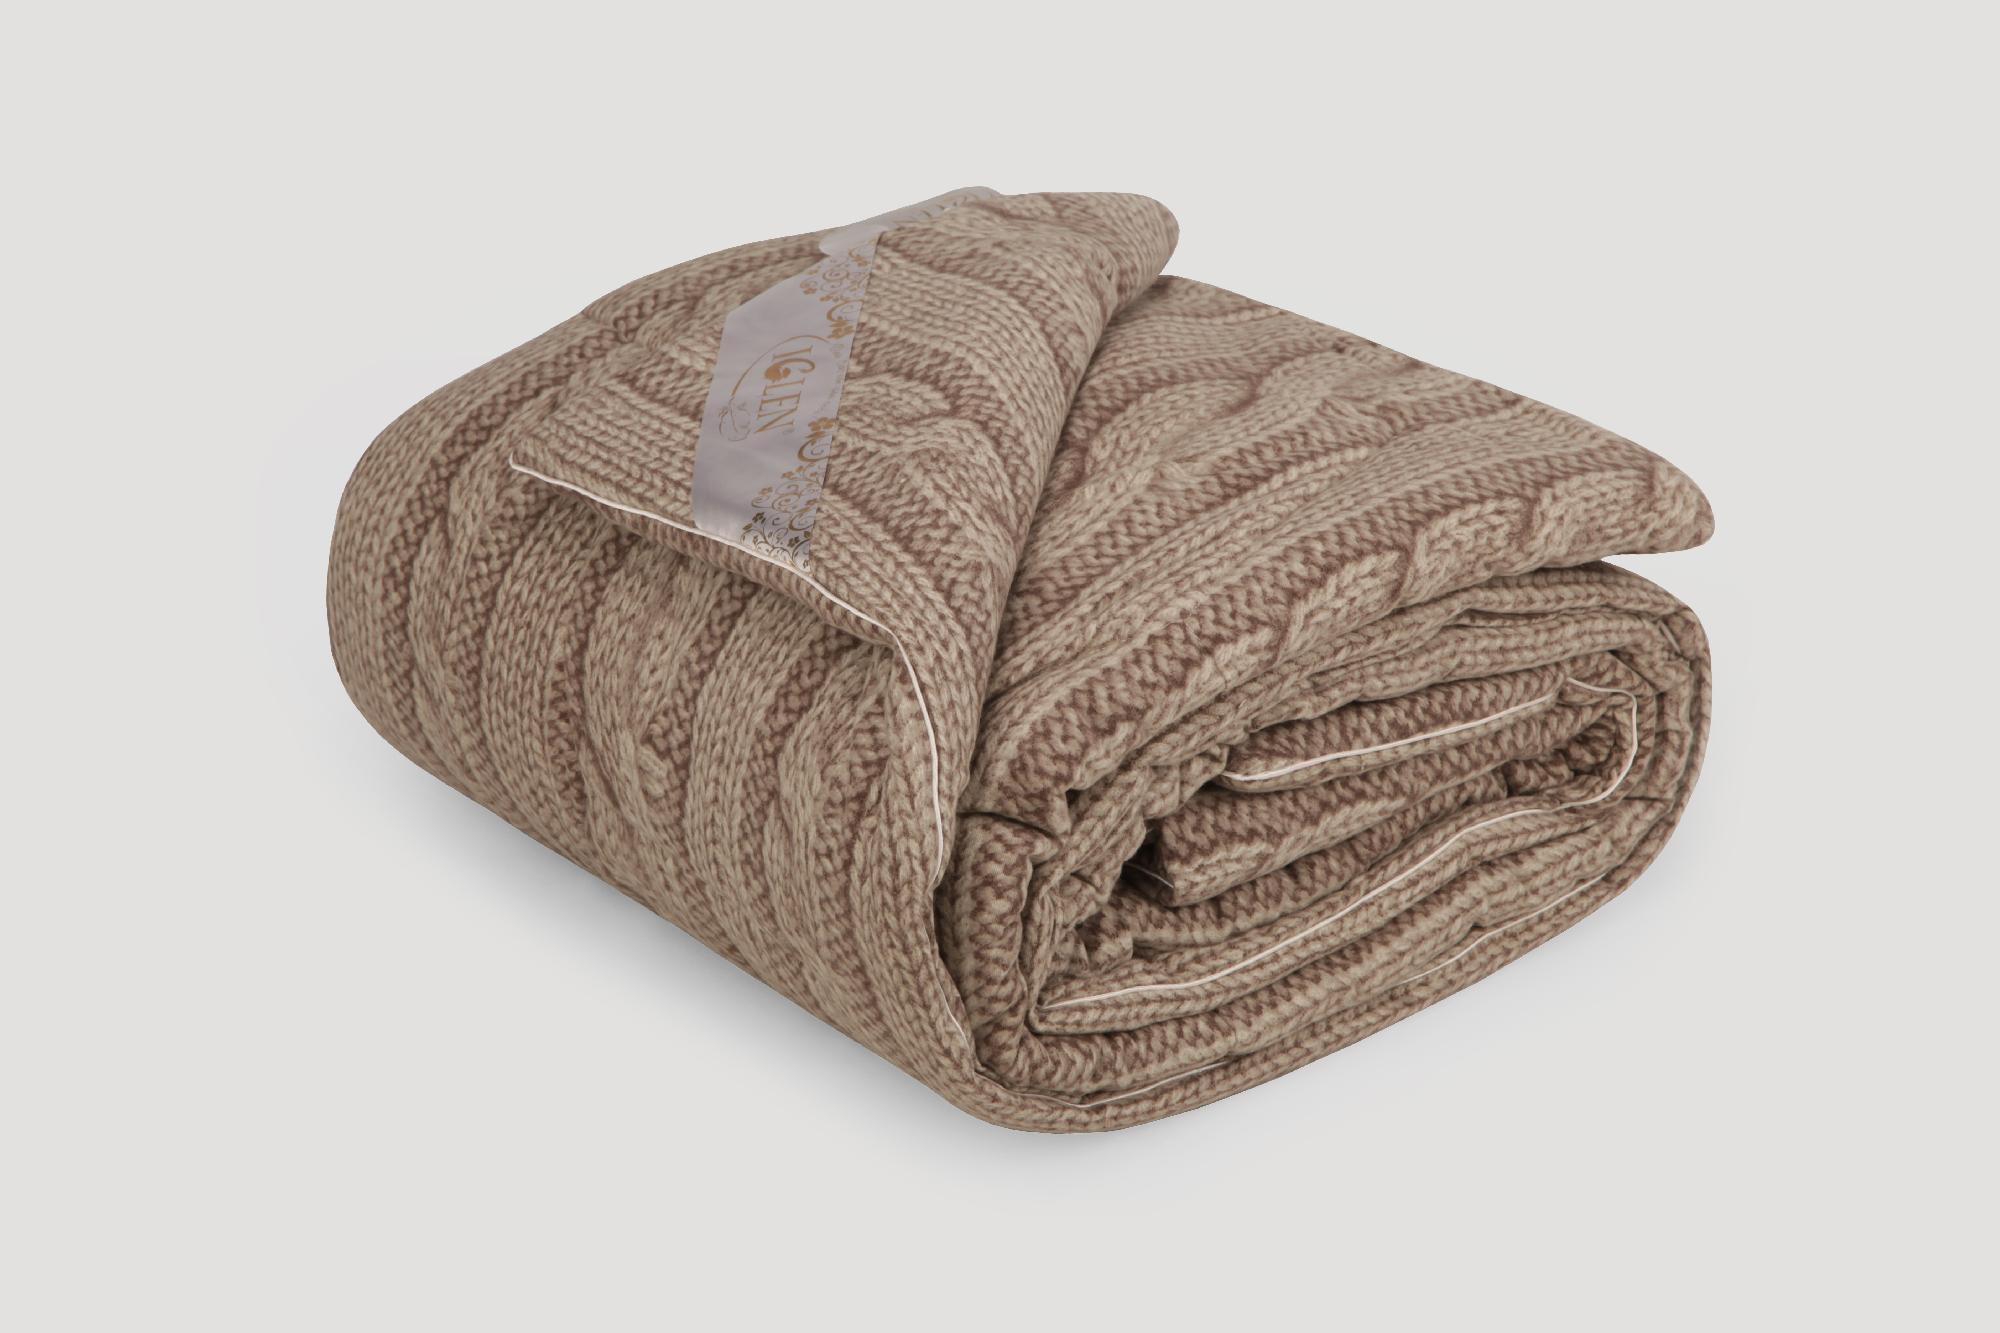 Одеяло IGLEN из овечьей шерсти во фланели Зимнее 220х240 см Коричневый (2202405F)